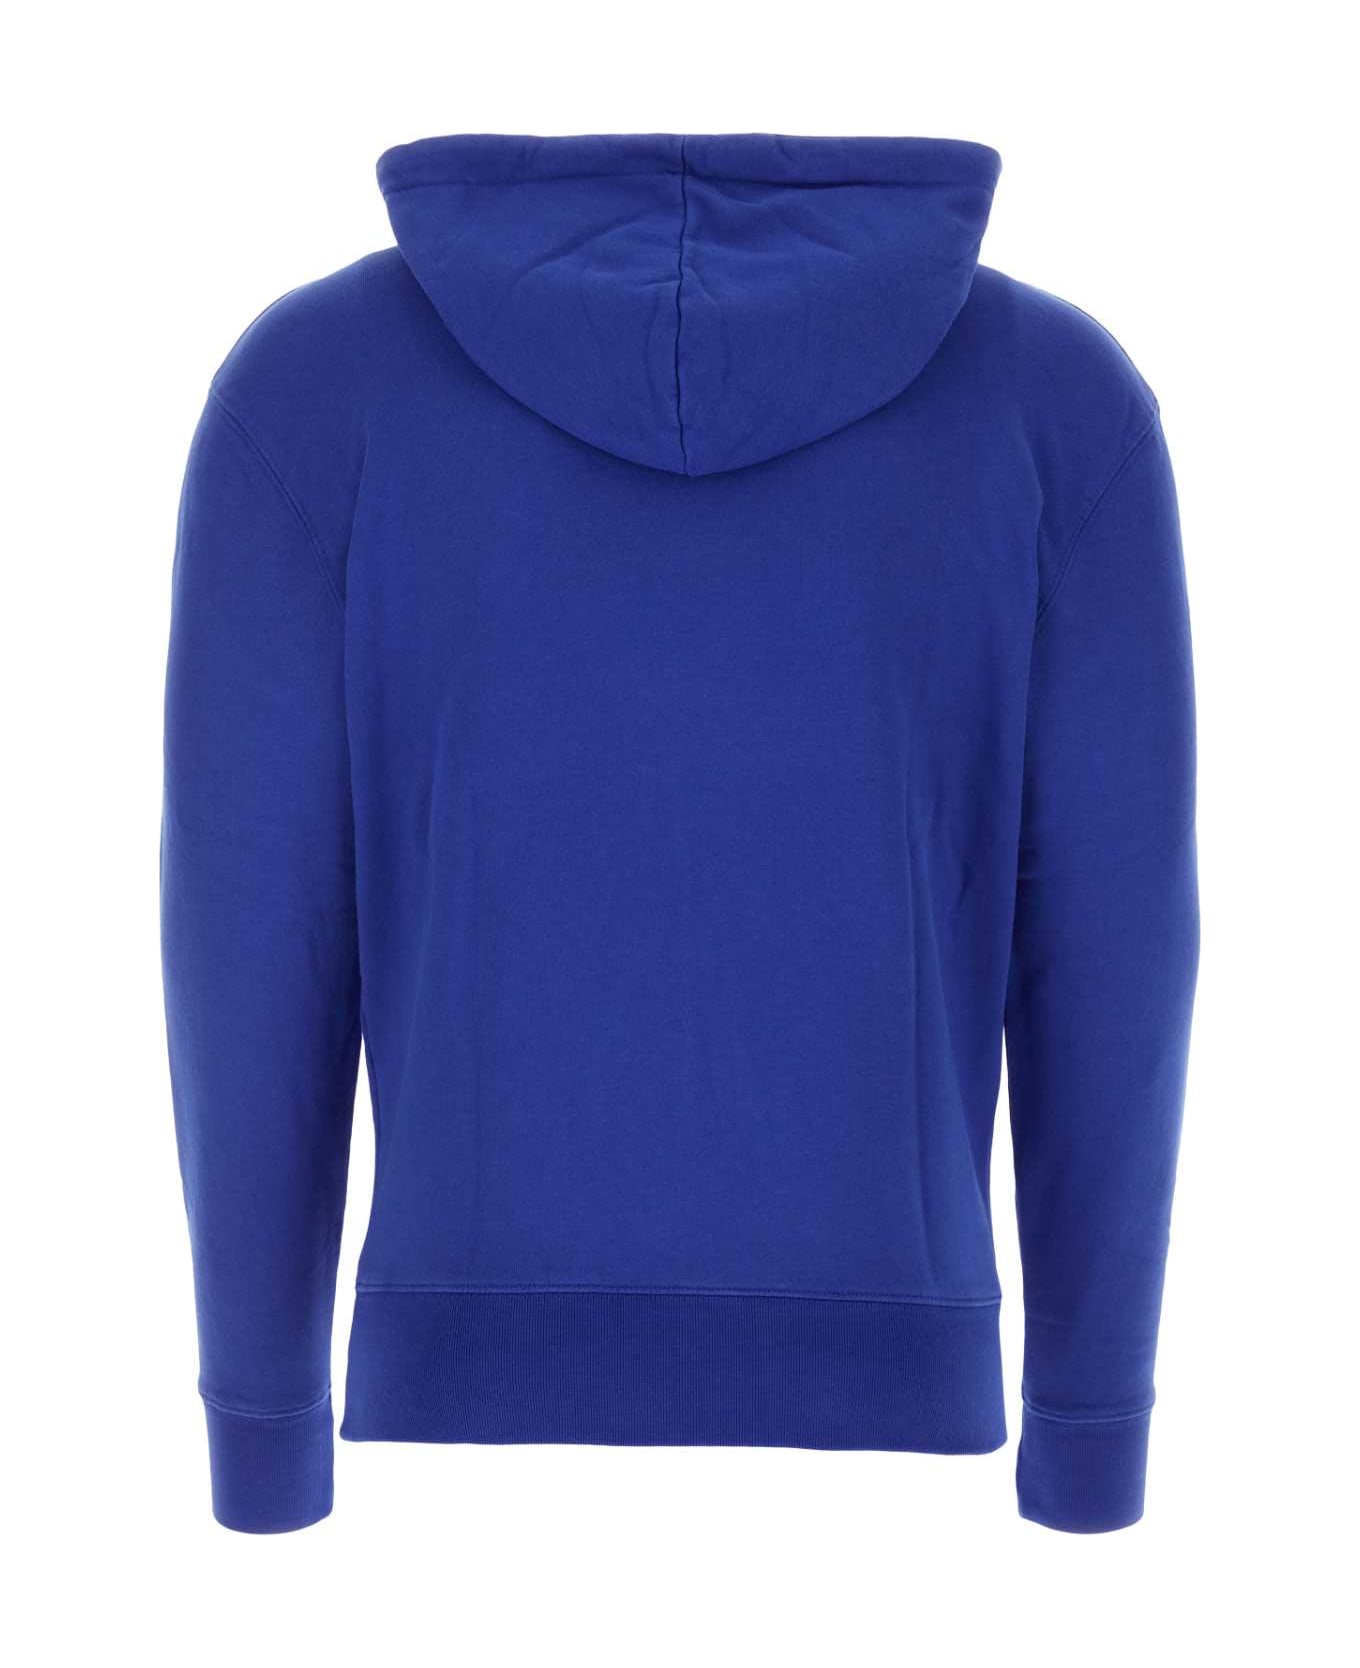 Maison Kitsuné Blue Cotton Sweatshirt - P485